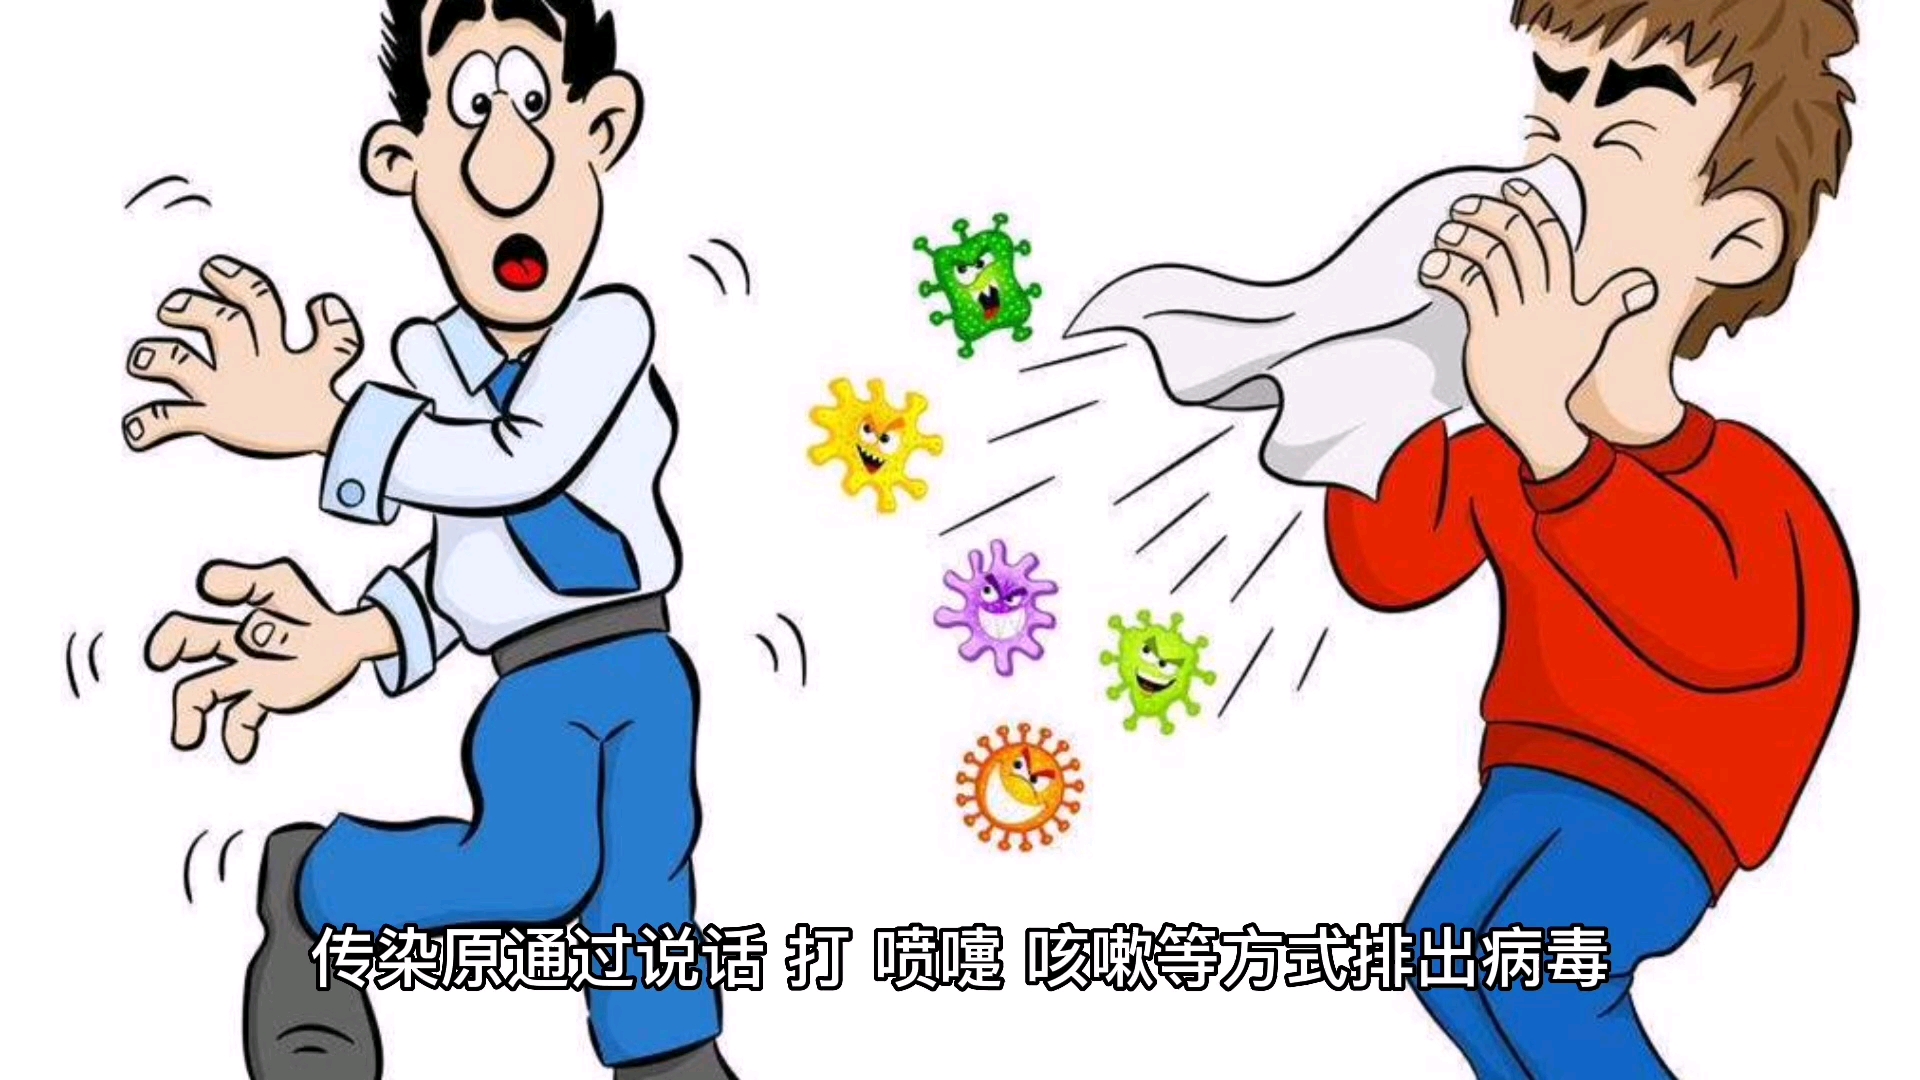 我院急症科医护人员齐心协力应对“流感高峰期”-天津中医药大学二附属医院-站群网站发布